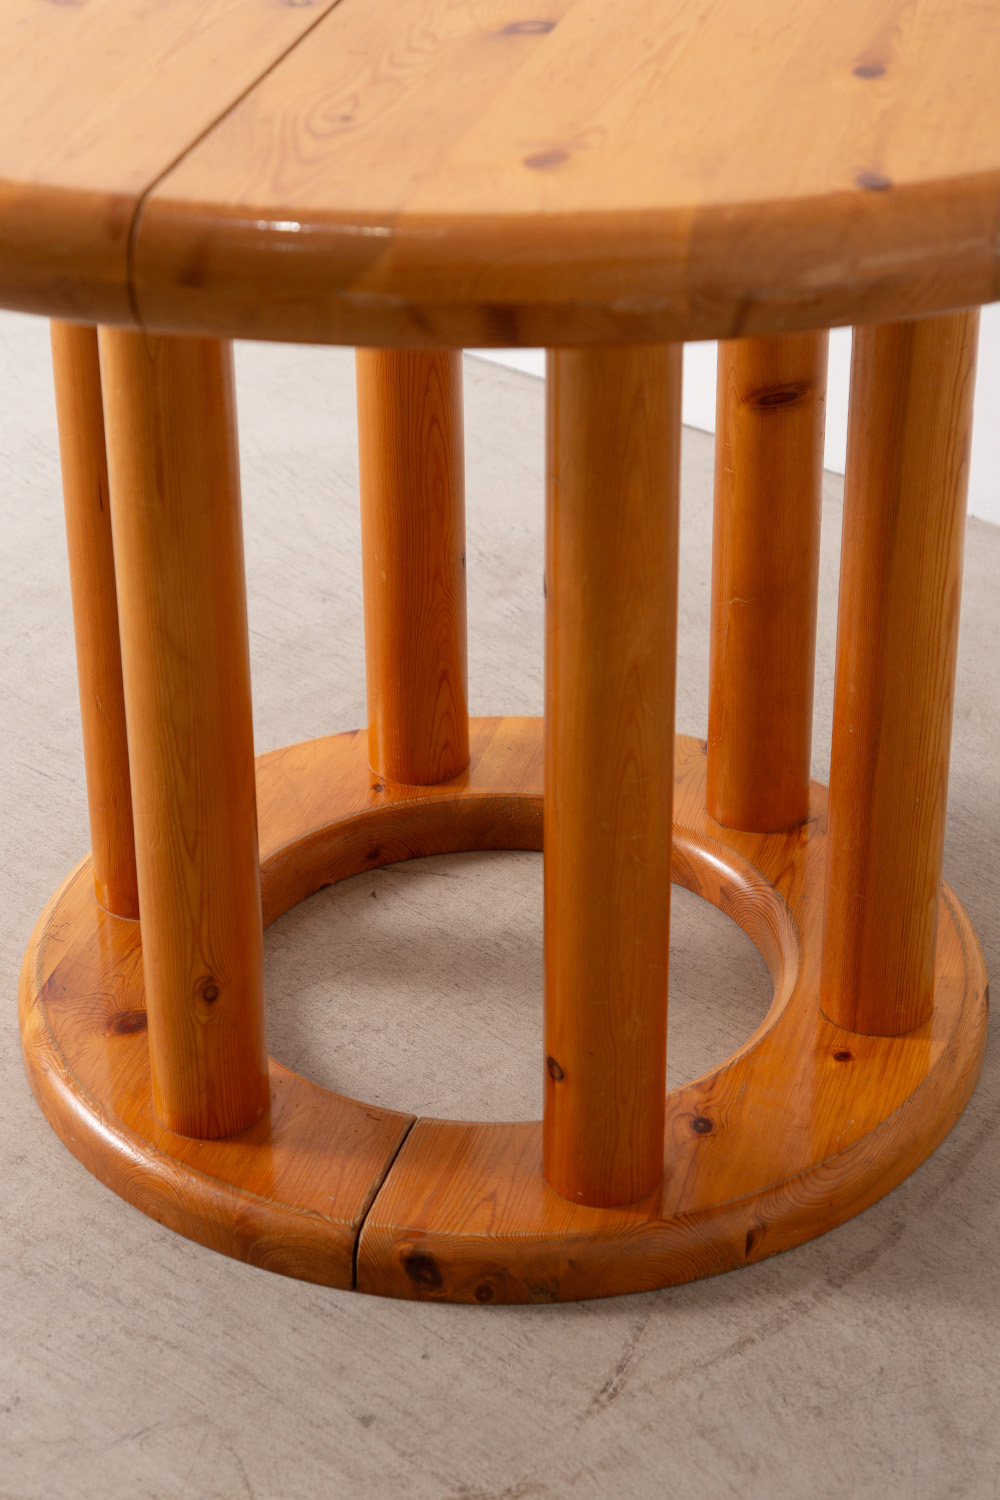 Extension Round Table #001 by Rainer Daumiller for Hirtshals Savvaerk in Pine